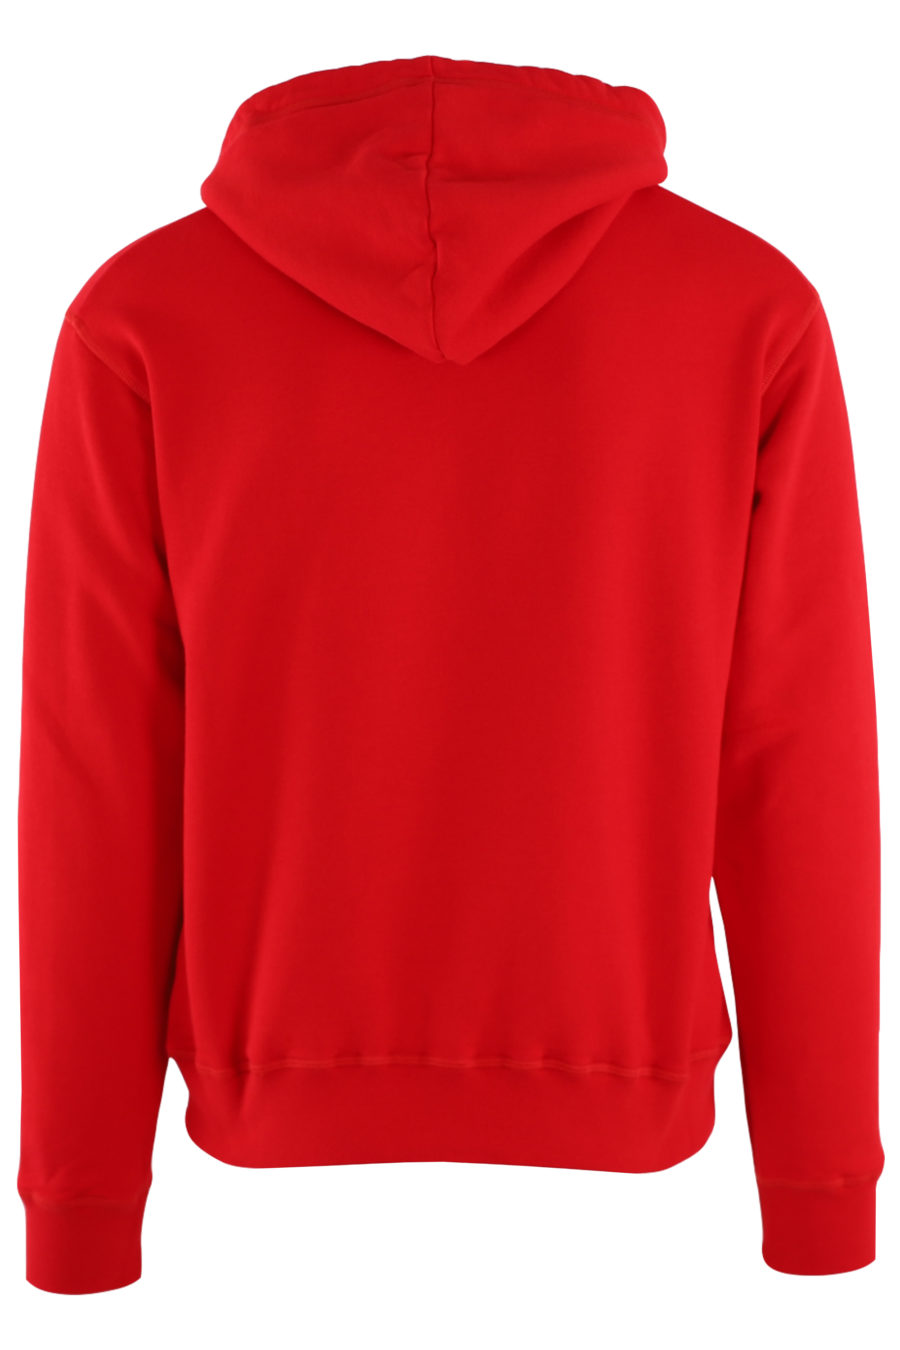 Rotes Kapuzensweatshirt mit "Icon Spray"-Logo - IMG 8816